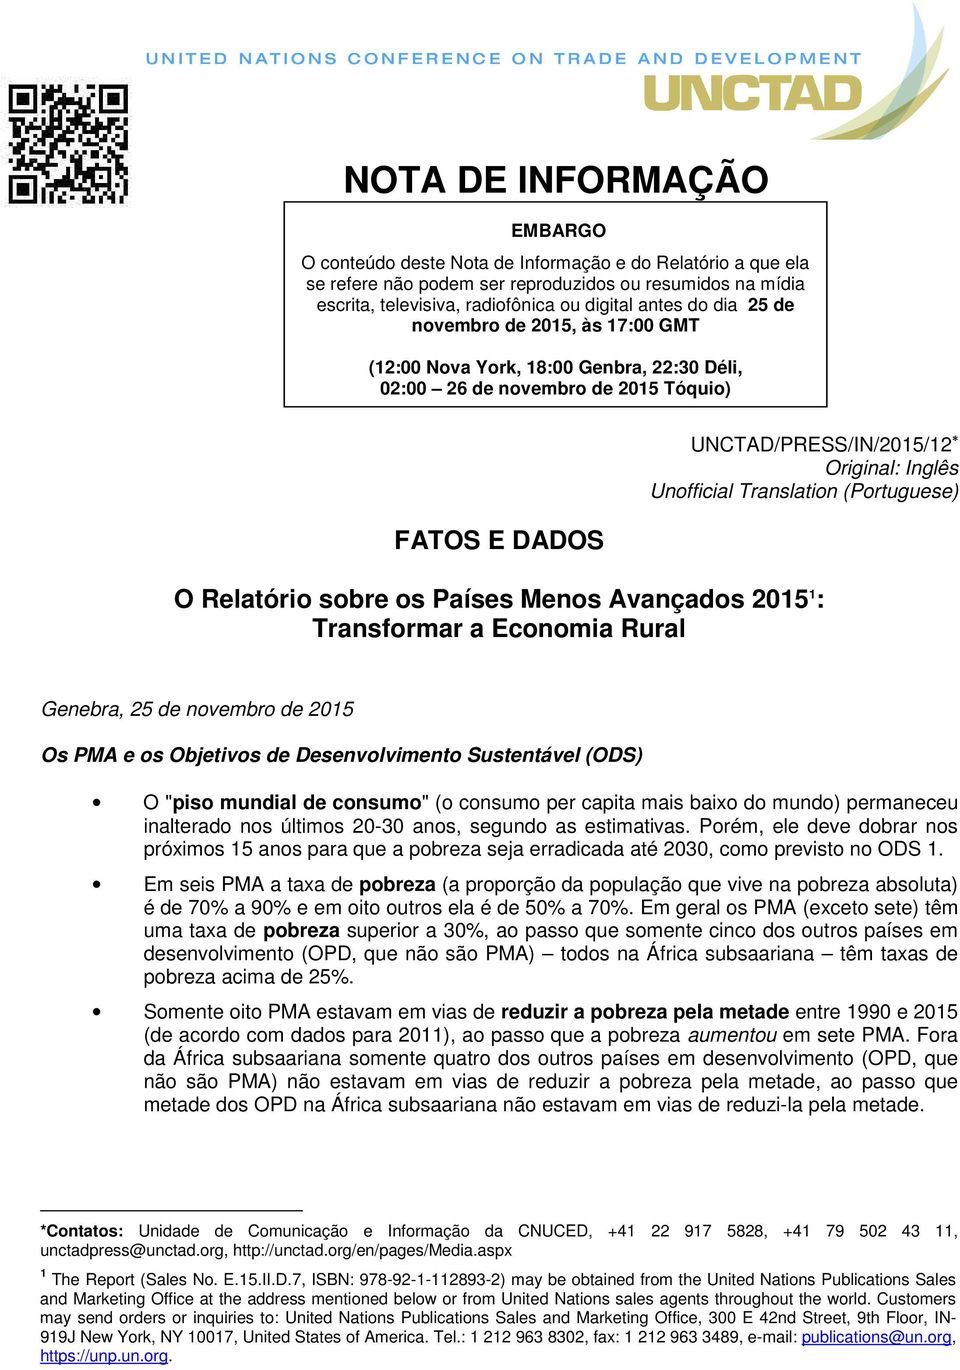 (Portuguese) O Relatório sobre os Países Menos Avançados 2015 1 : Transformar a Economia Rural Genebra, 25 de novembro de 2015 Os PMA e os Objetivos de Desenvolvimento Sustentável (ODS) O "piso